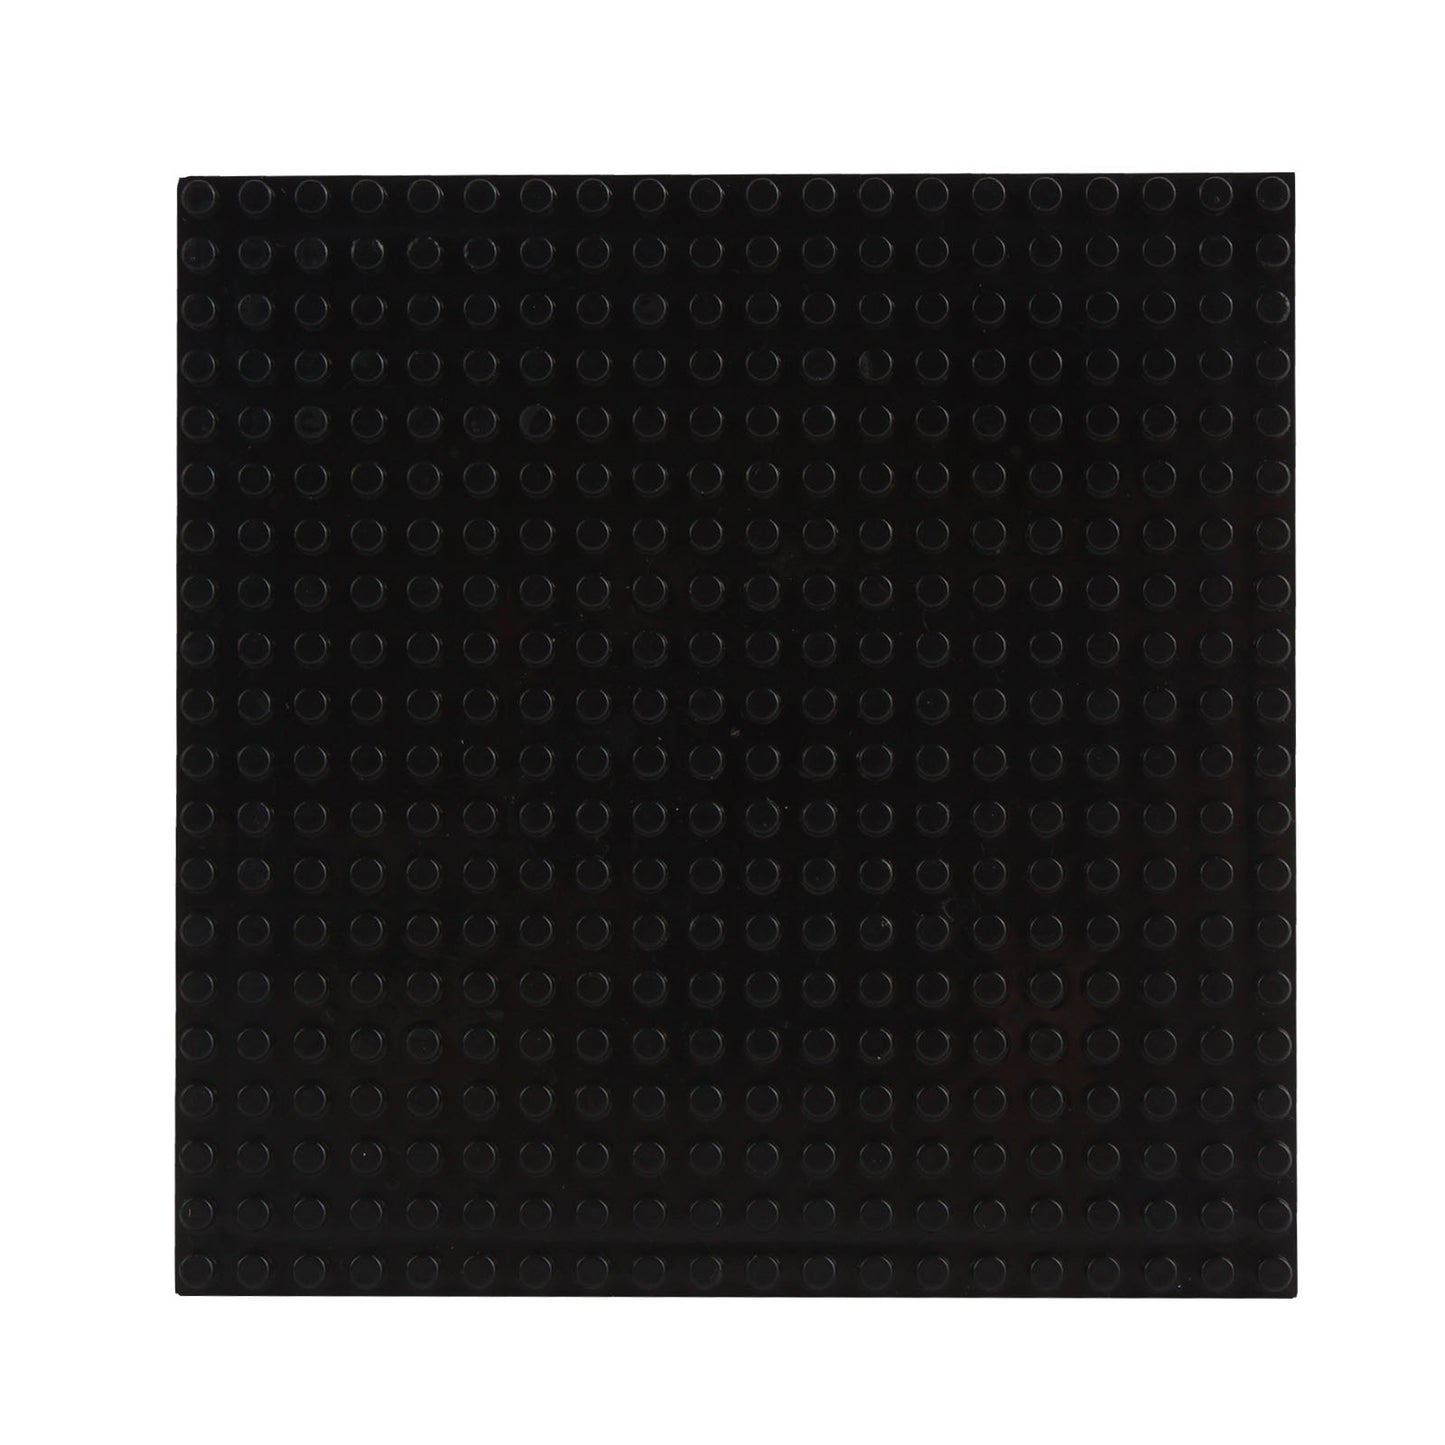 Larcele 10 Pieces Mini Building Blocks Base Plates JMDB-02 (Square,Black)